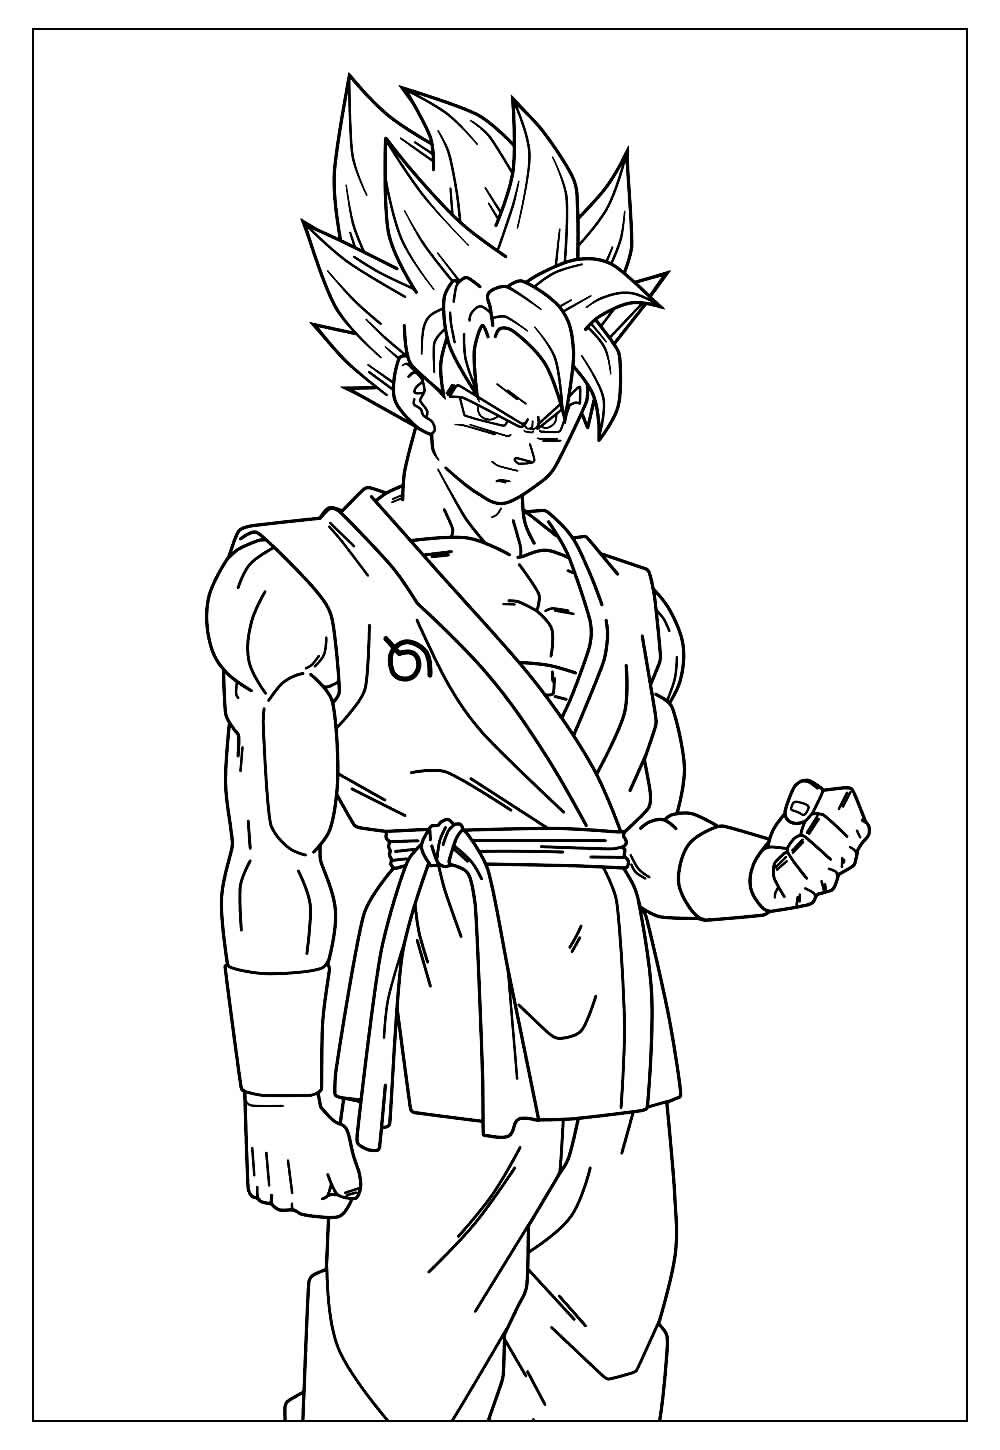 Goku SSJB - colorido - Desenho de soratabaka_ - Gartic, imagens do